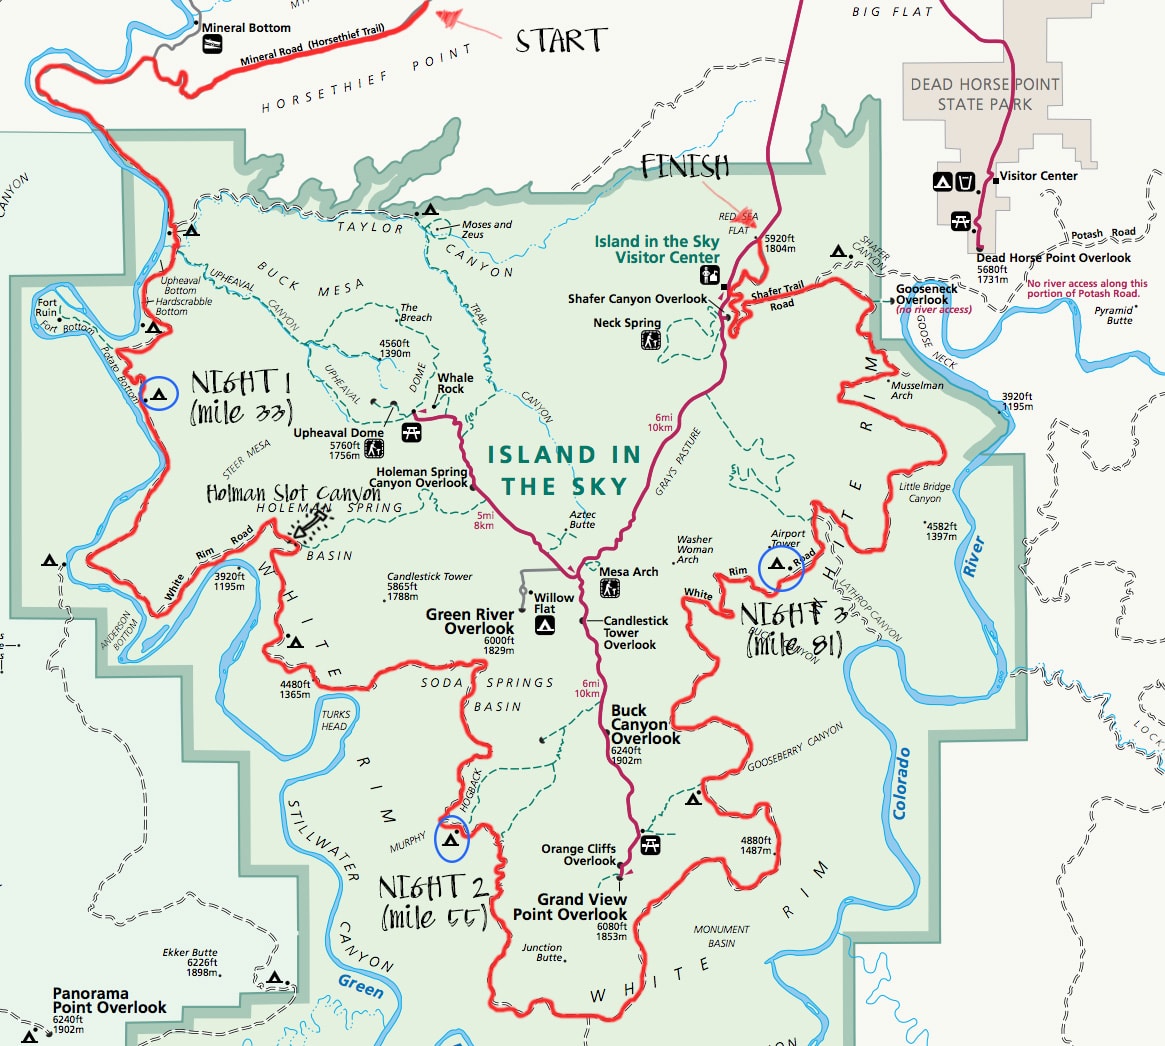 白缘步道地图//在峡谷地国家公园(Canyonlands National Park)的白缘步道(White Rim Trail)计划你的山地自行车之旅。了解许可证，行程，装备，营地等。